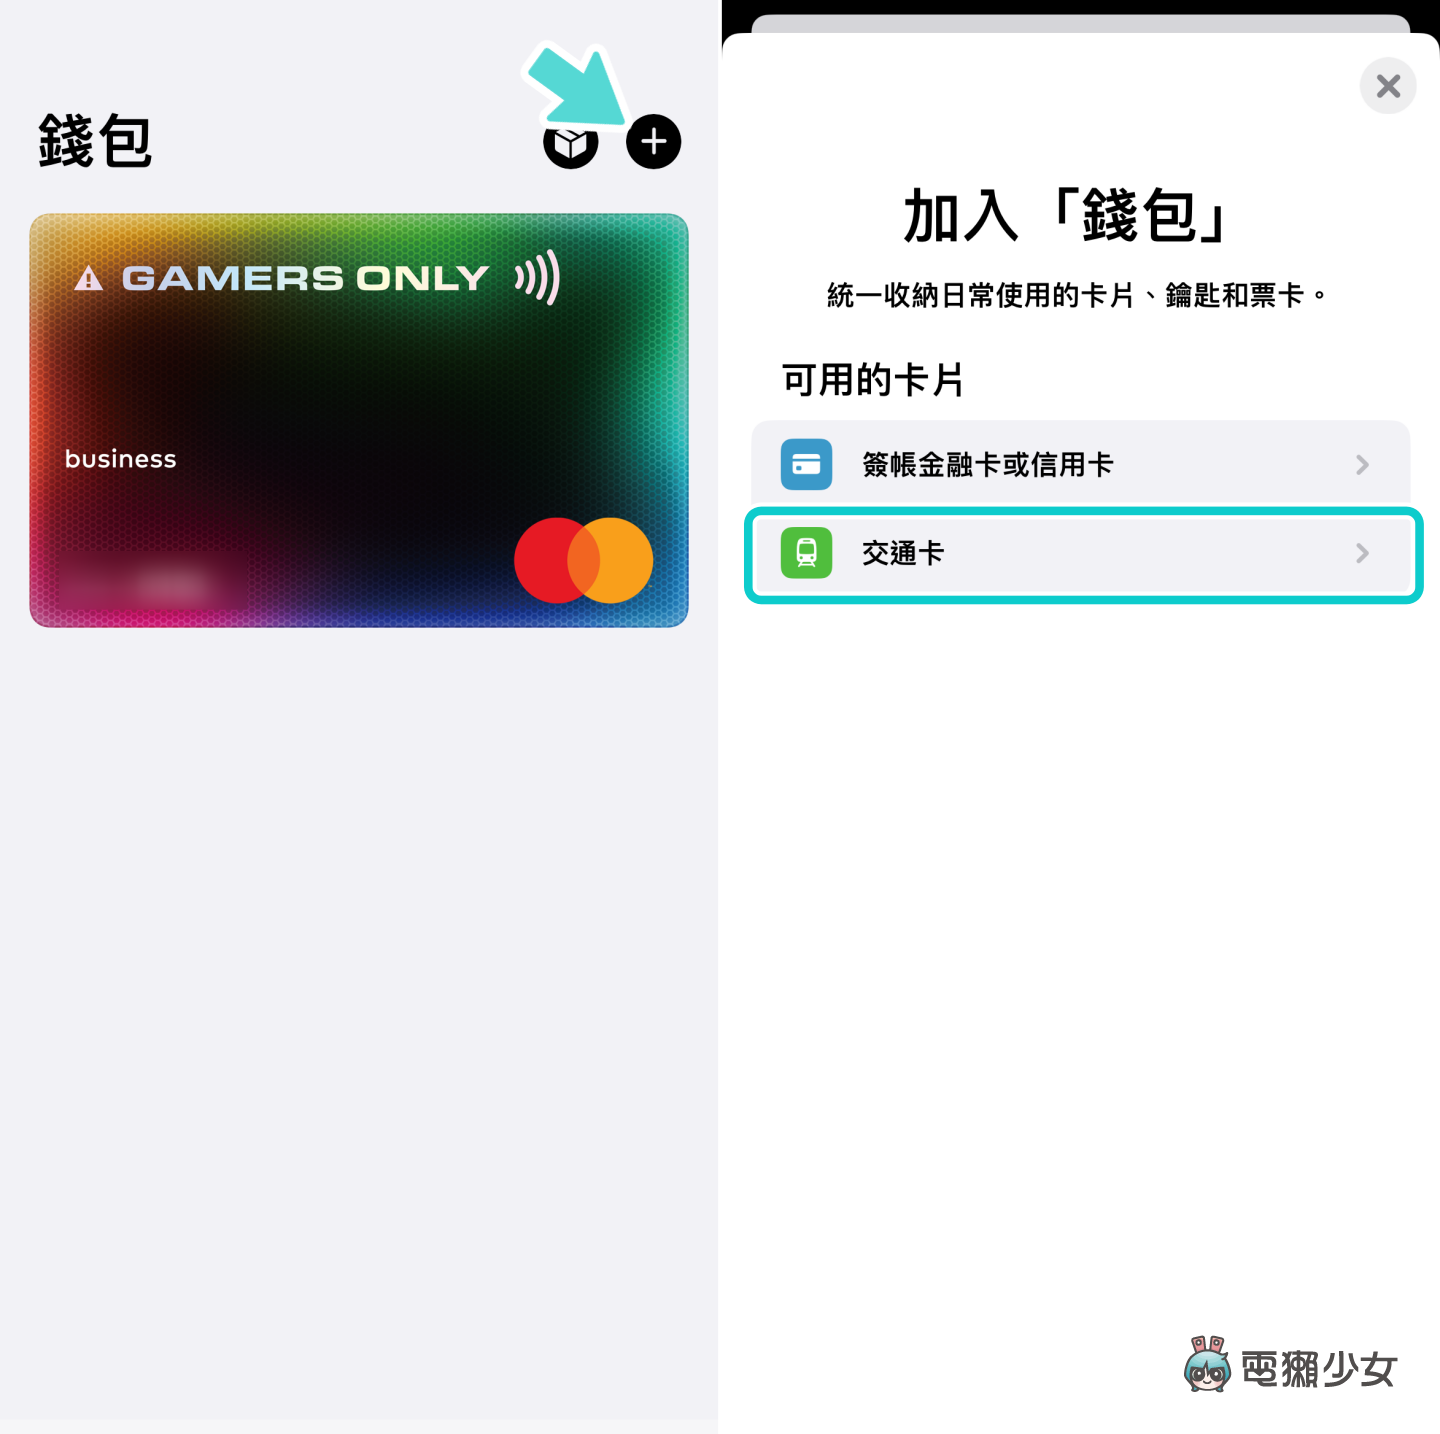 ICOCA 開放支援 Apple Pay！如何加進 iPhone 錢包？轉移後特殊卡面會顯示嗎？熱門 QA 一次看